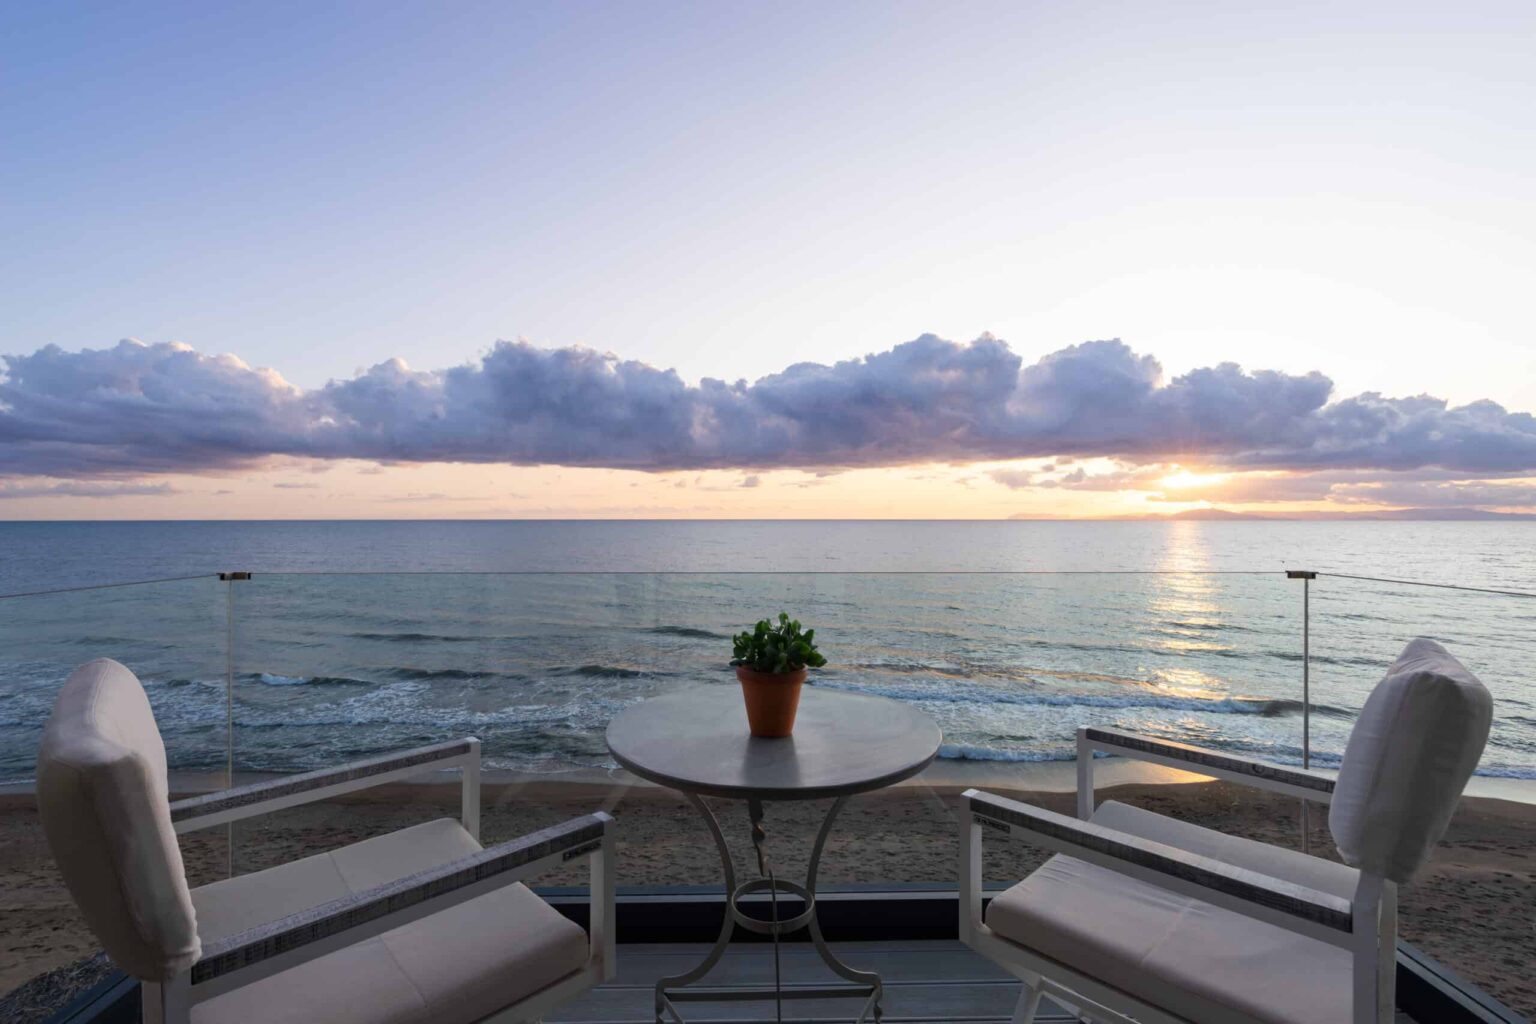 Dexamenes Beachfront Villa’s Suite terrace overlooking the water